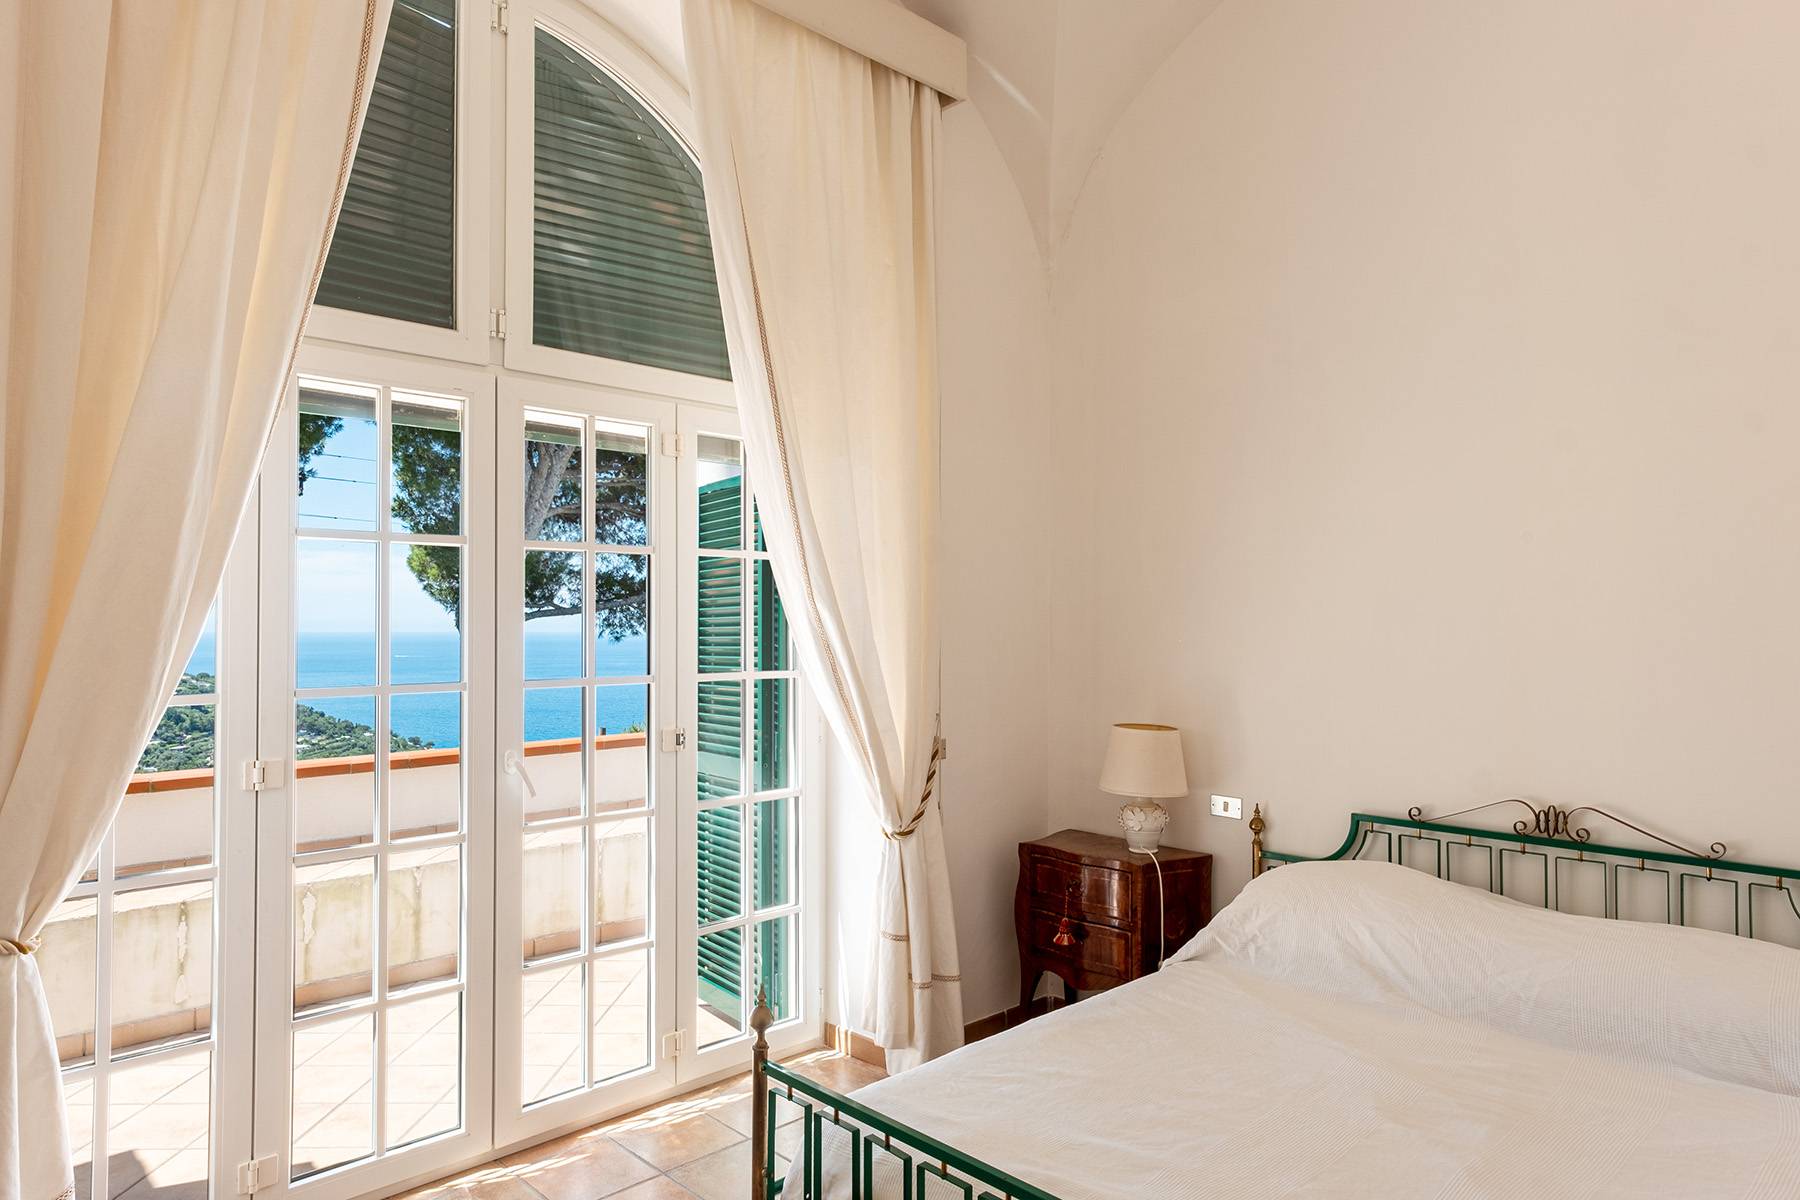 Villa in Vendita a Capri: 5 locali, 300 mq - Foto 17